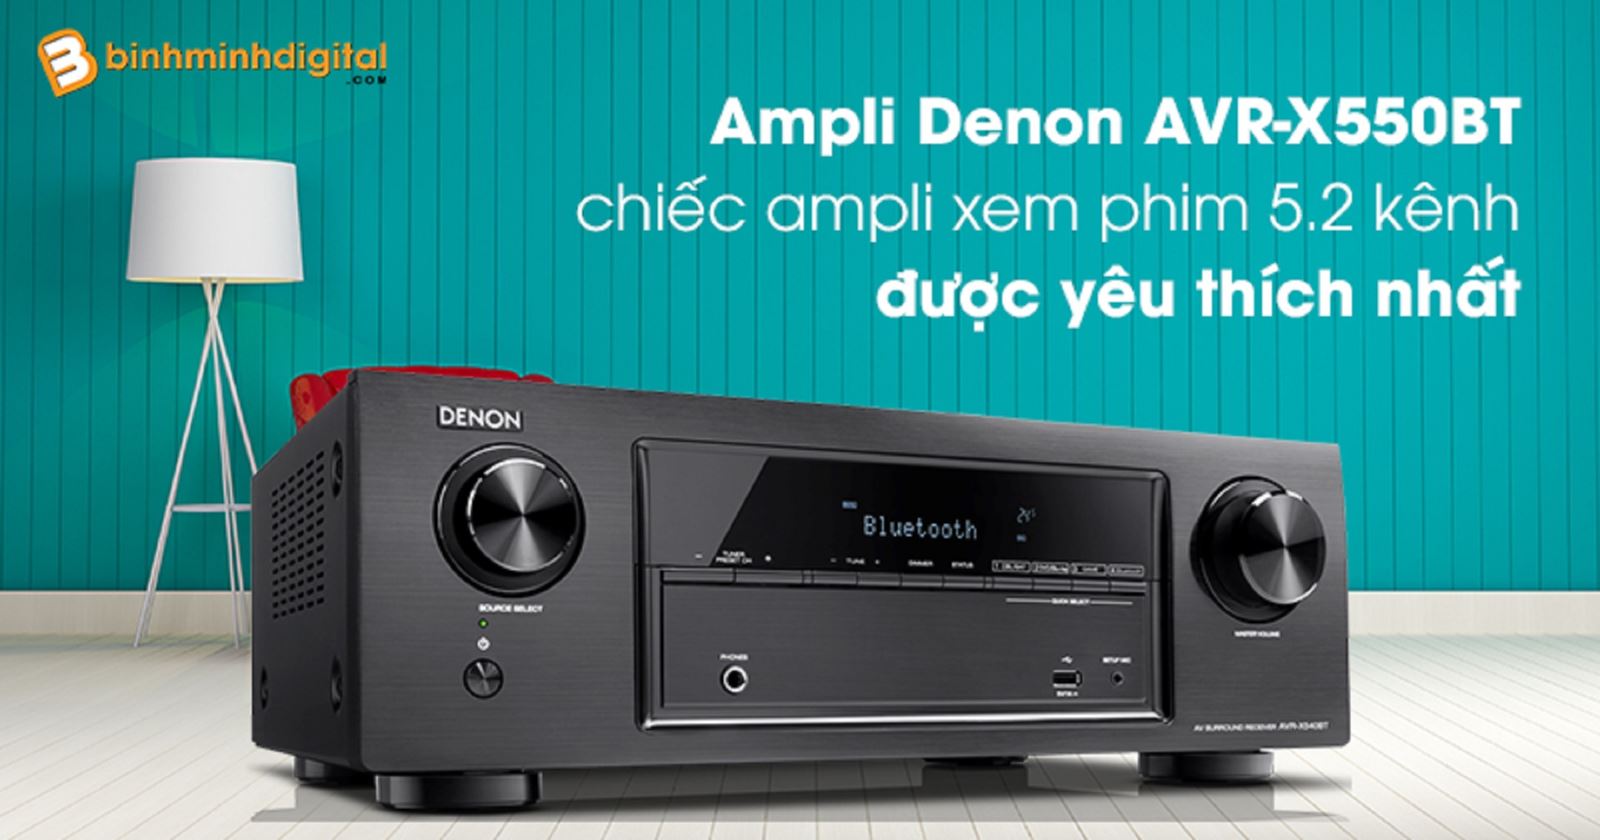 Ampli Denon AVR-X550BT - chiếc ampli xem phim 5.2 kênh được yêu thích nhất